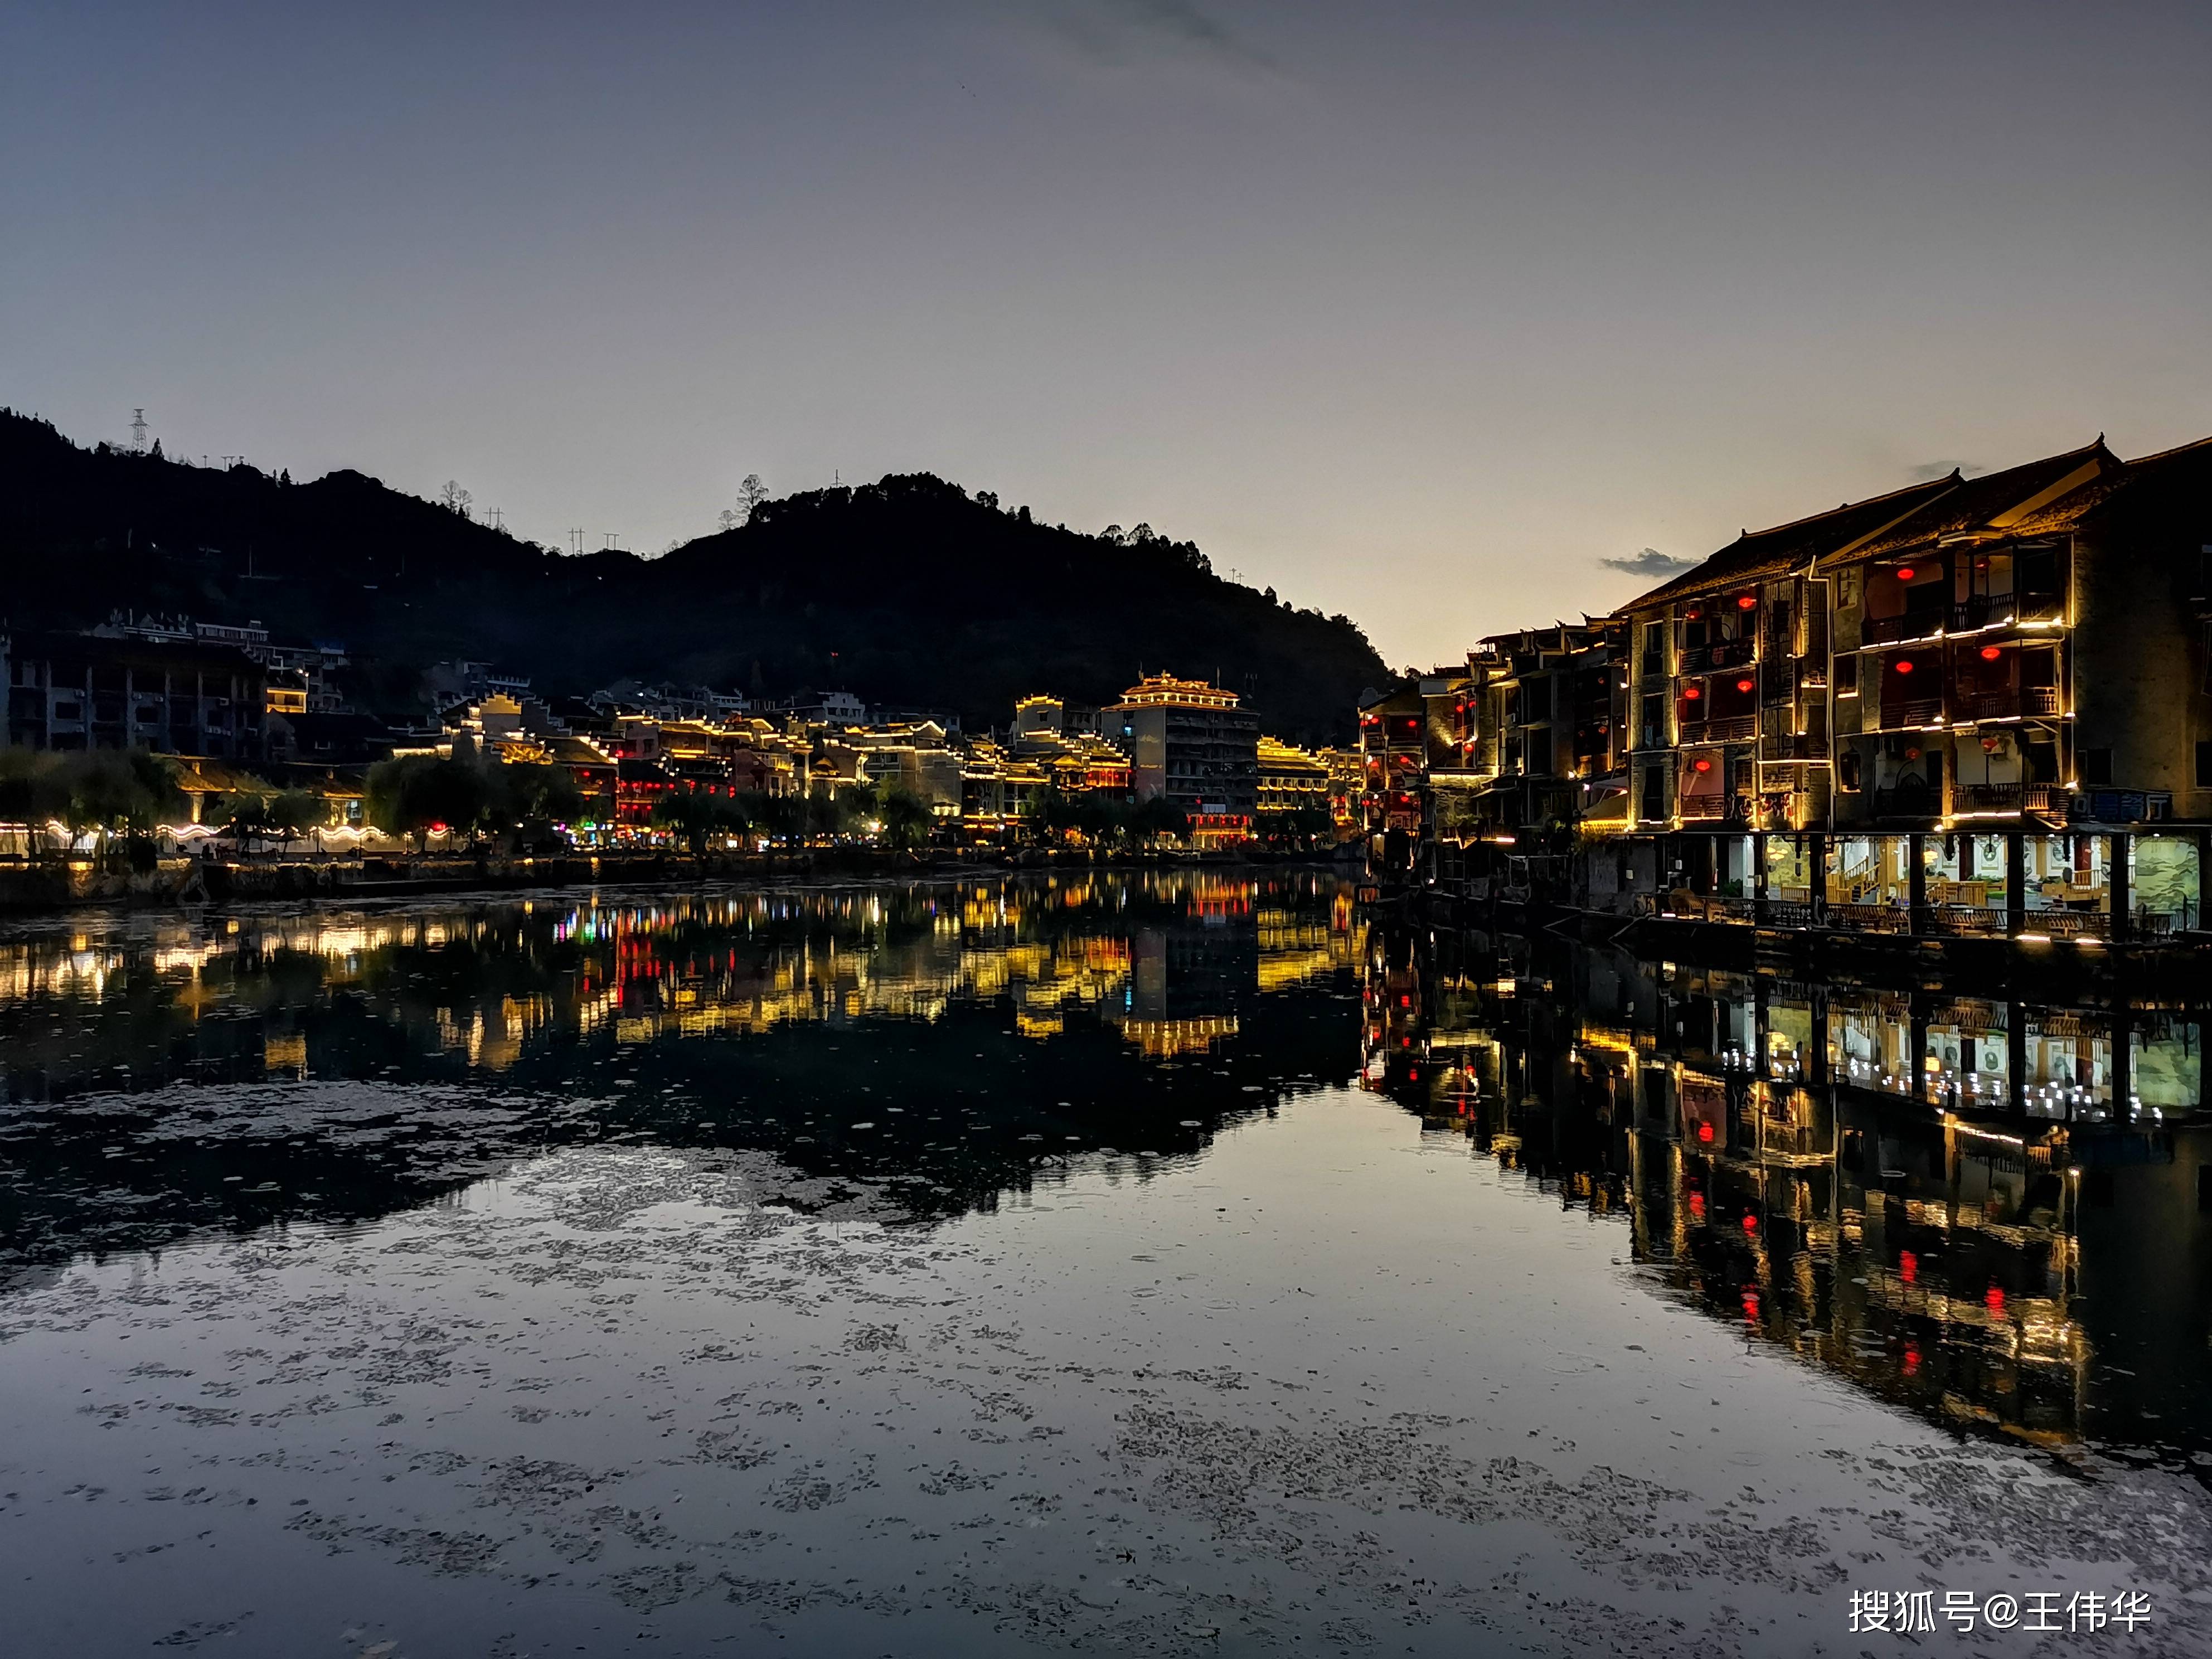 织金平远古镇夜景图片图片